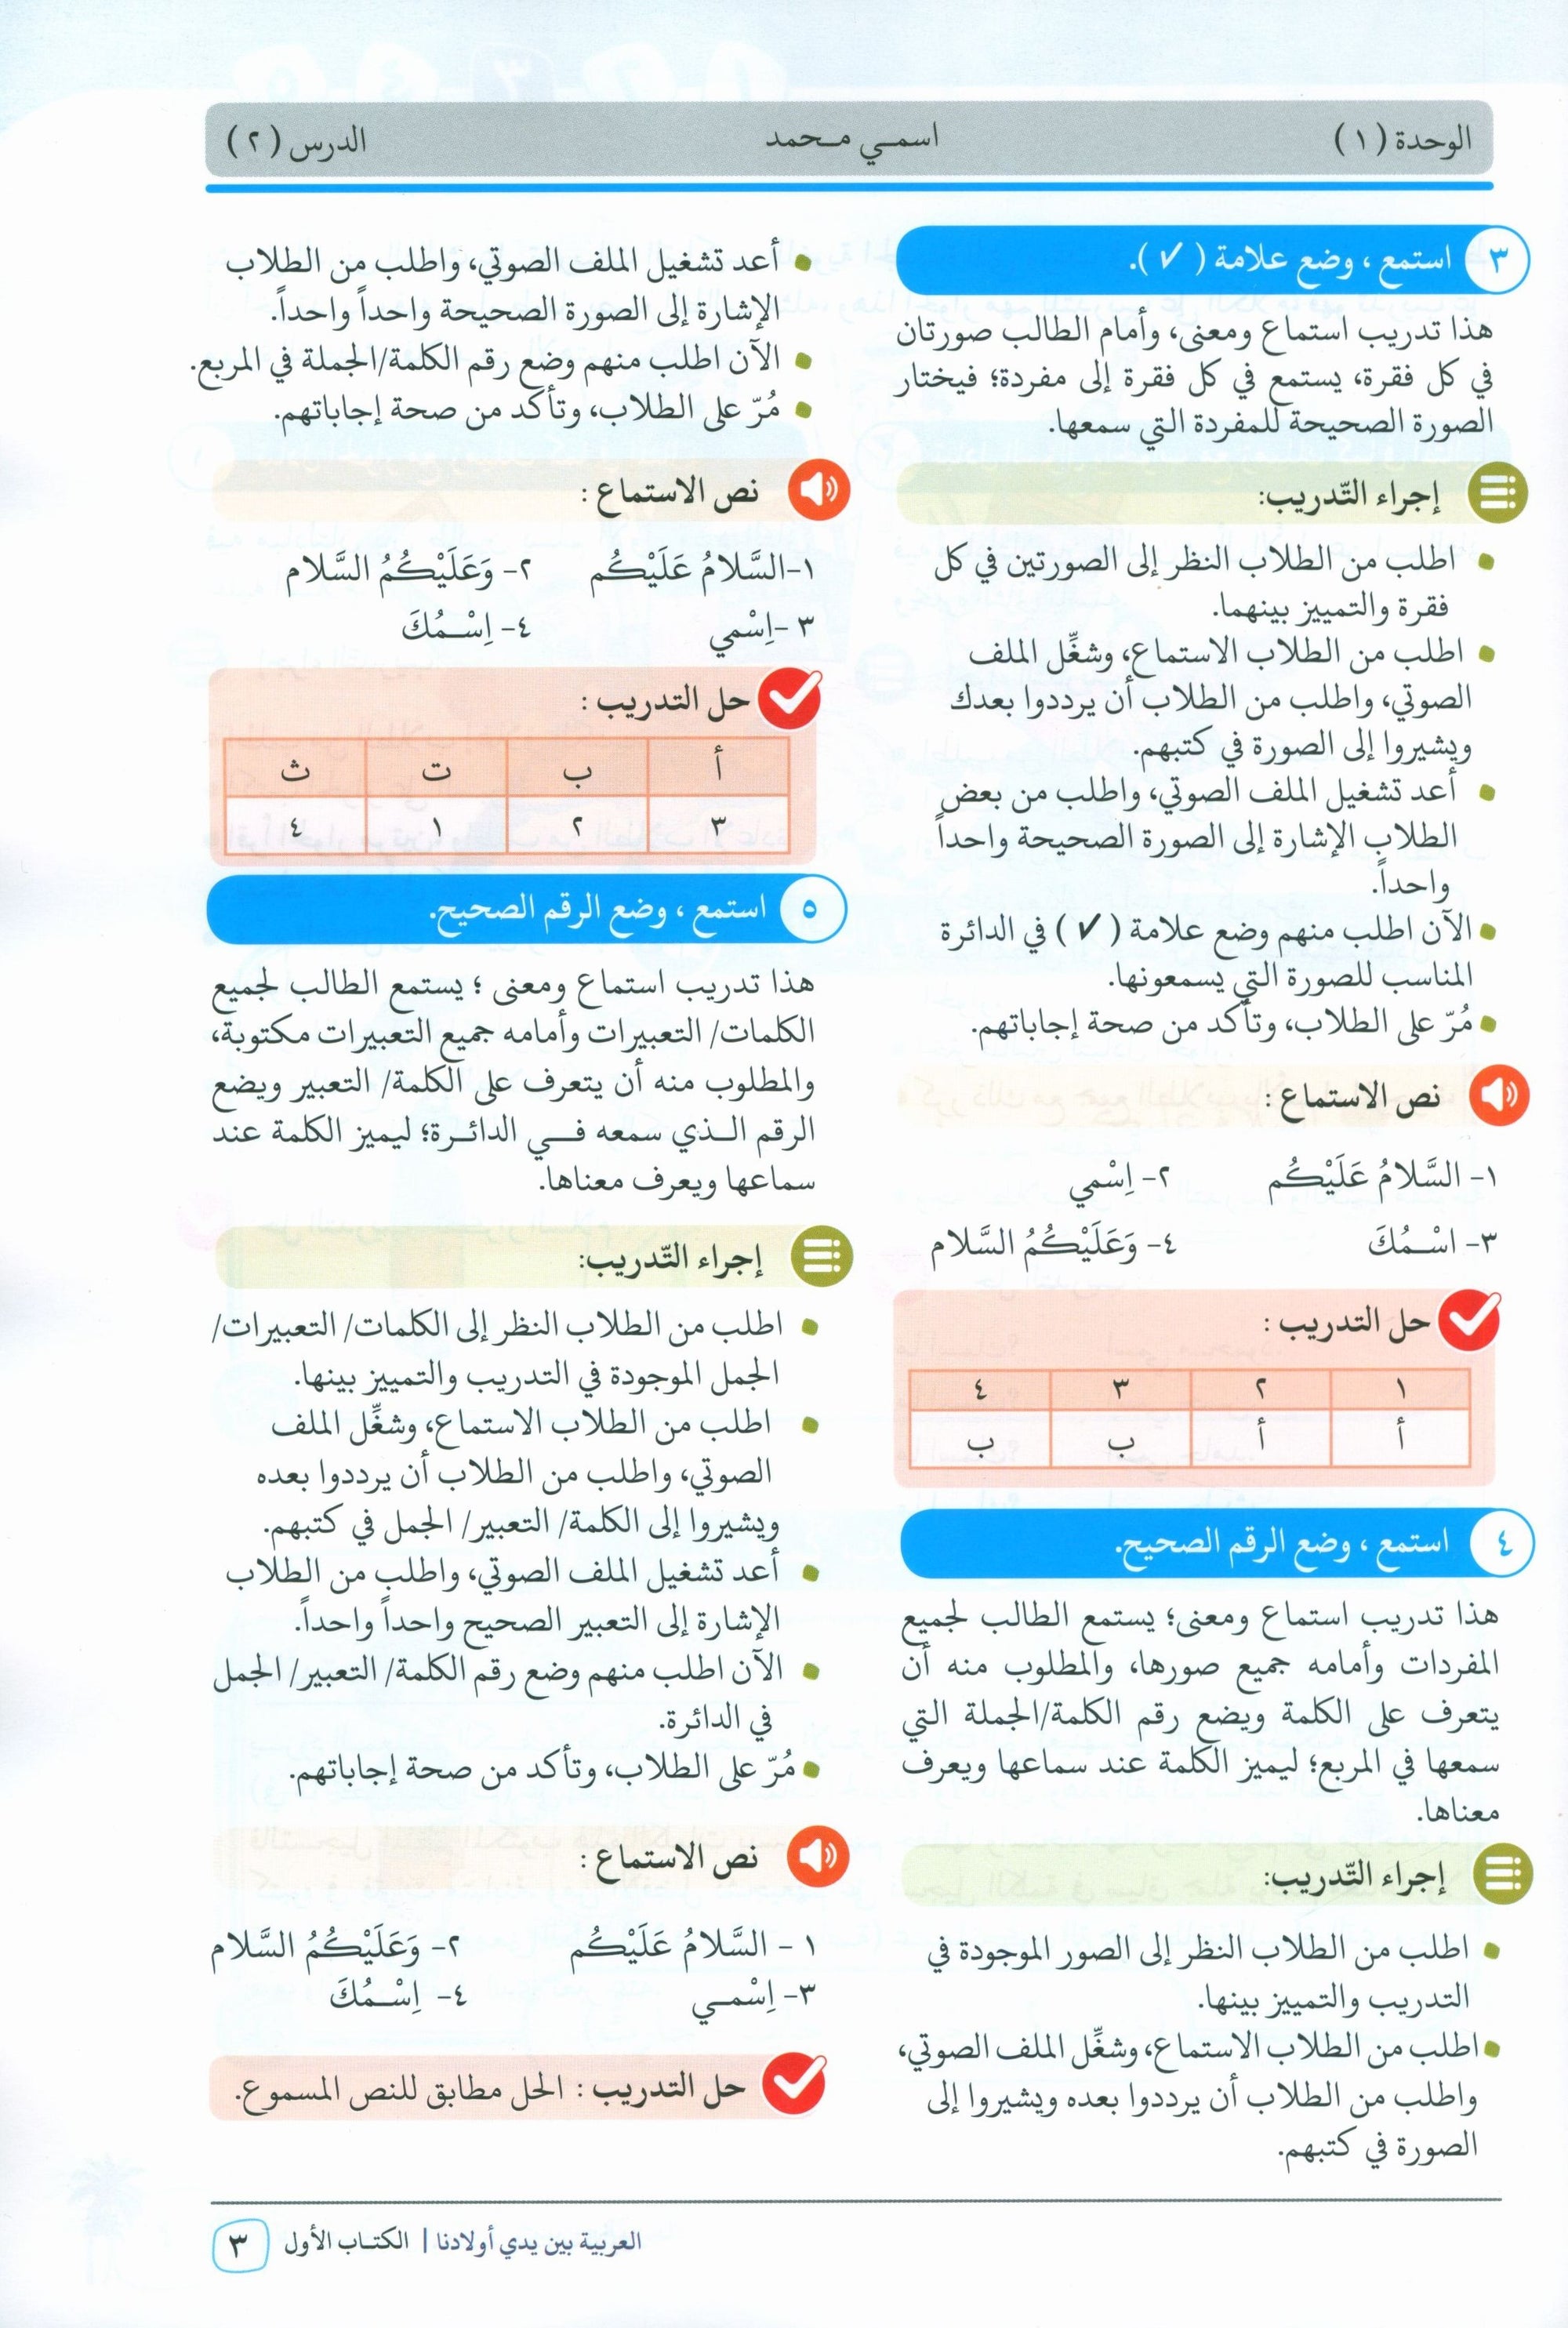 Arabic Between Our Children's Hands Teacher Guide Level 1 العربية بين يدي أولادنا